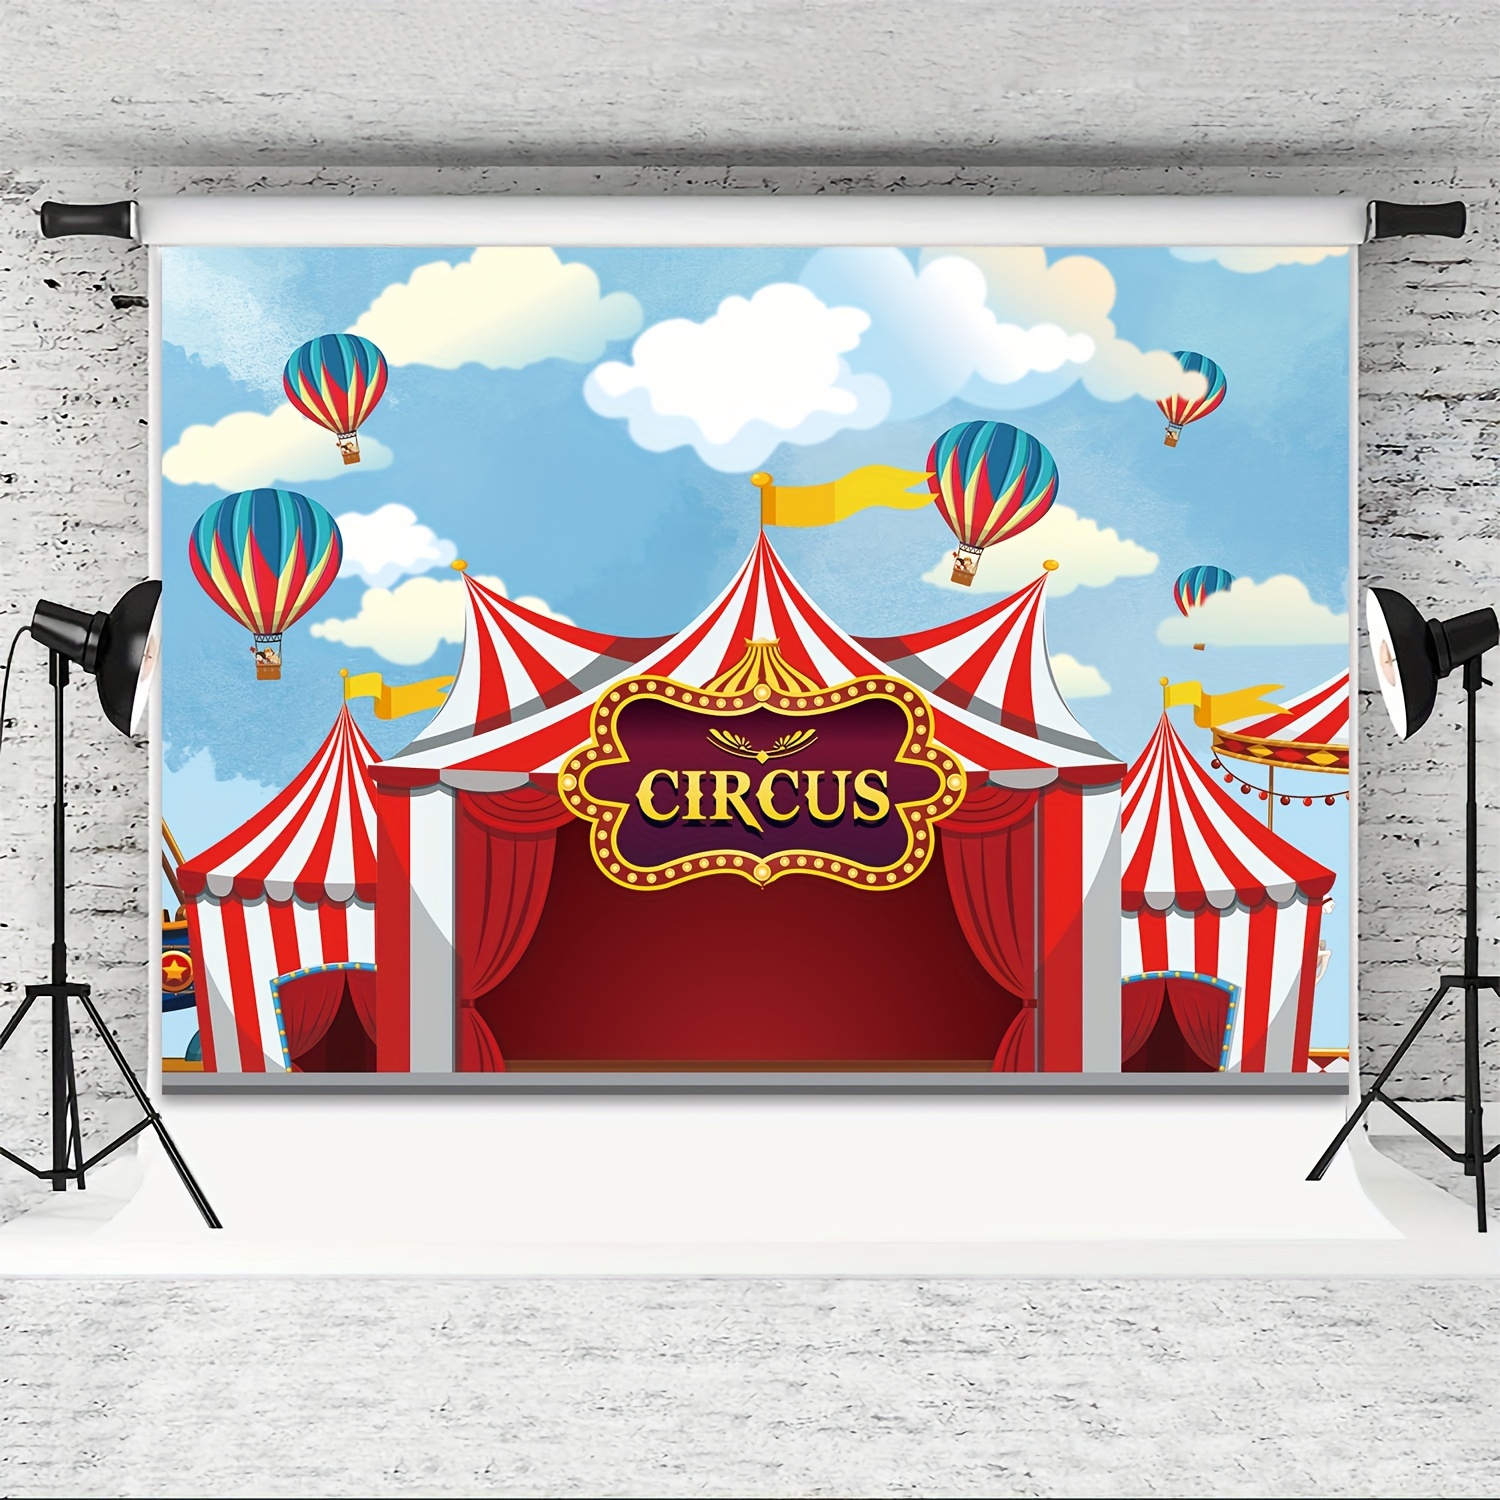  Decoración de fondo de fiesta temática de circo